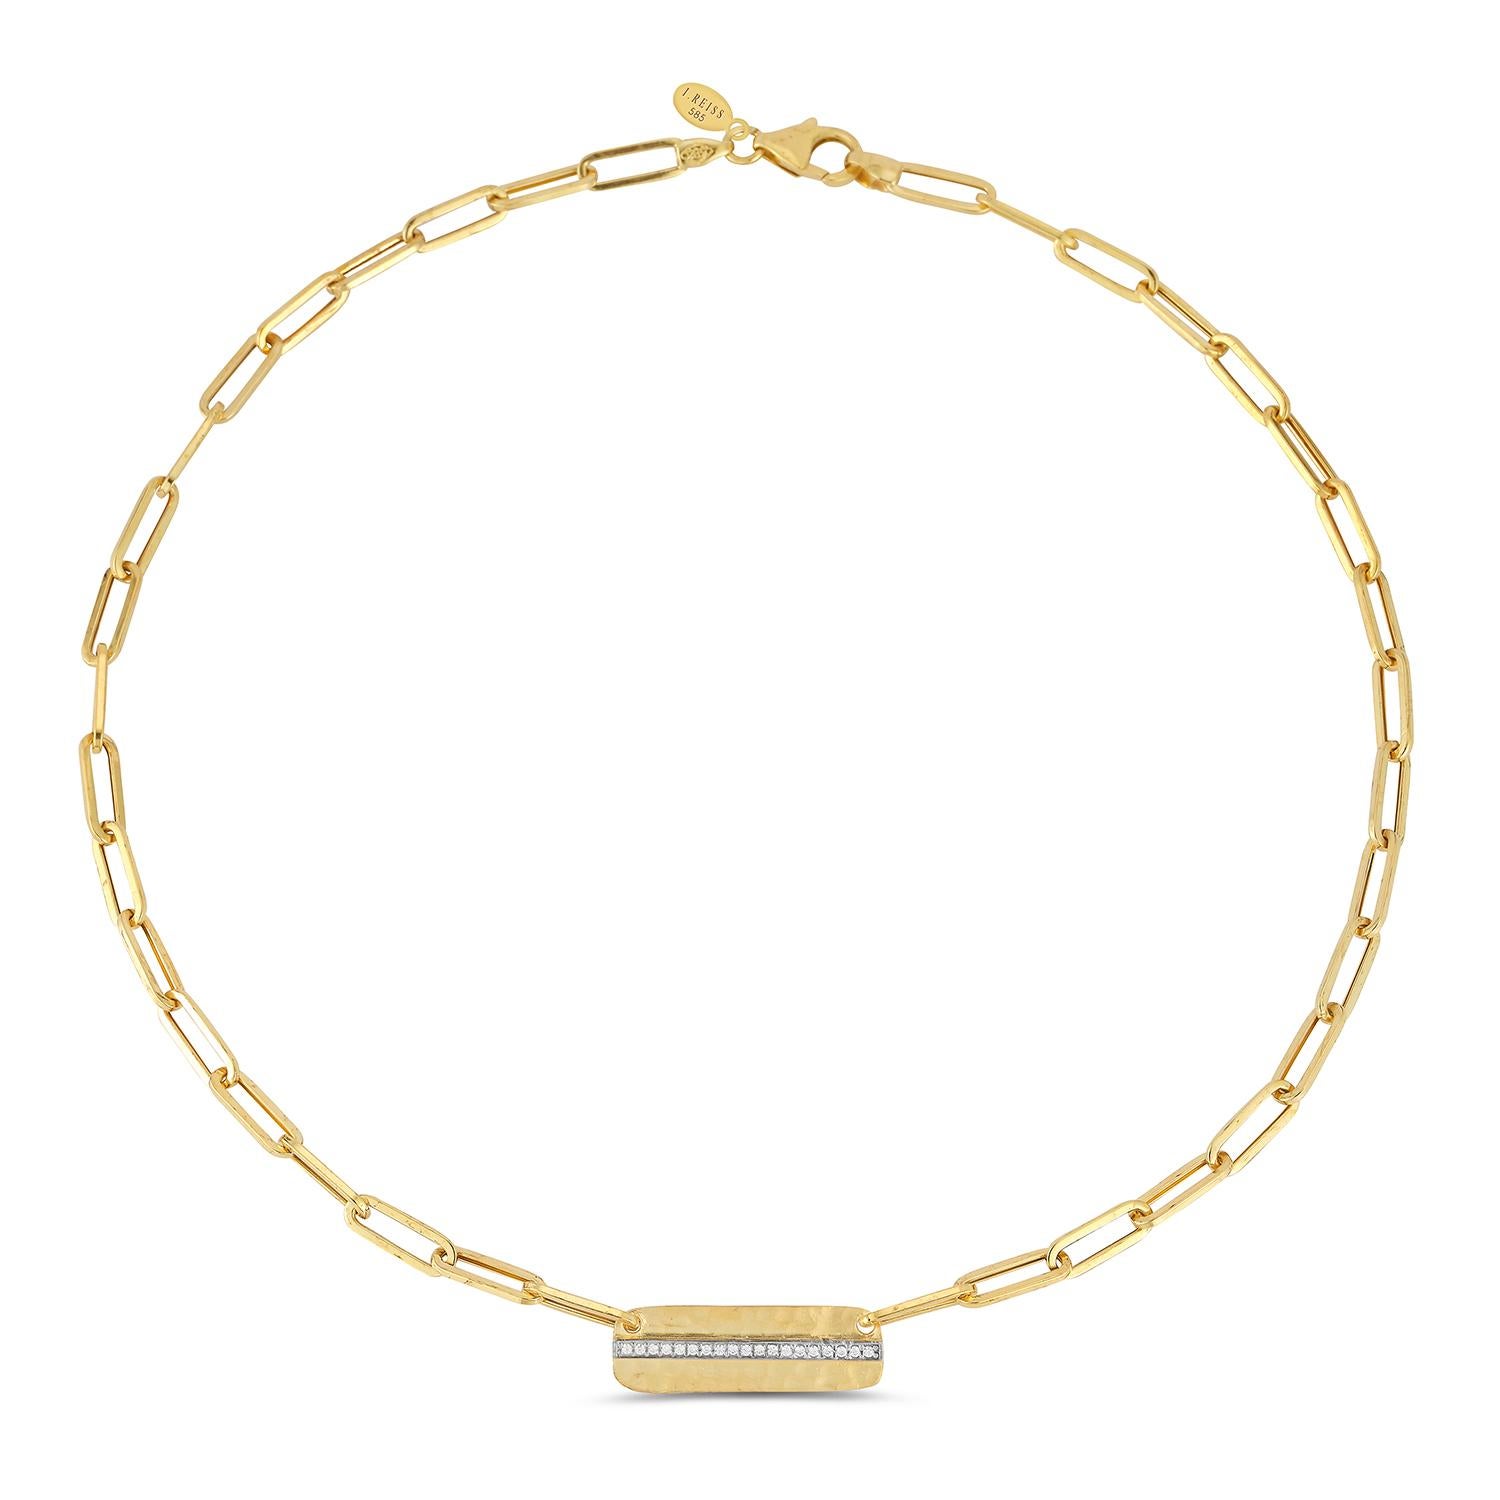 14 Karat Gelbgold Hand-Crafted polnischen fertig Papier-Clip Open Link Dog-Tag Halskette, mit 0,11 Karat Pave Set Diamanten akzentuiert.  Karabinerhaken-Verschluss.
